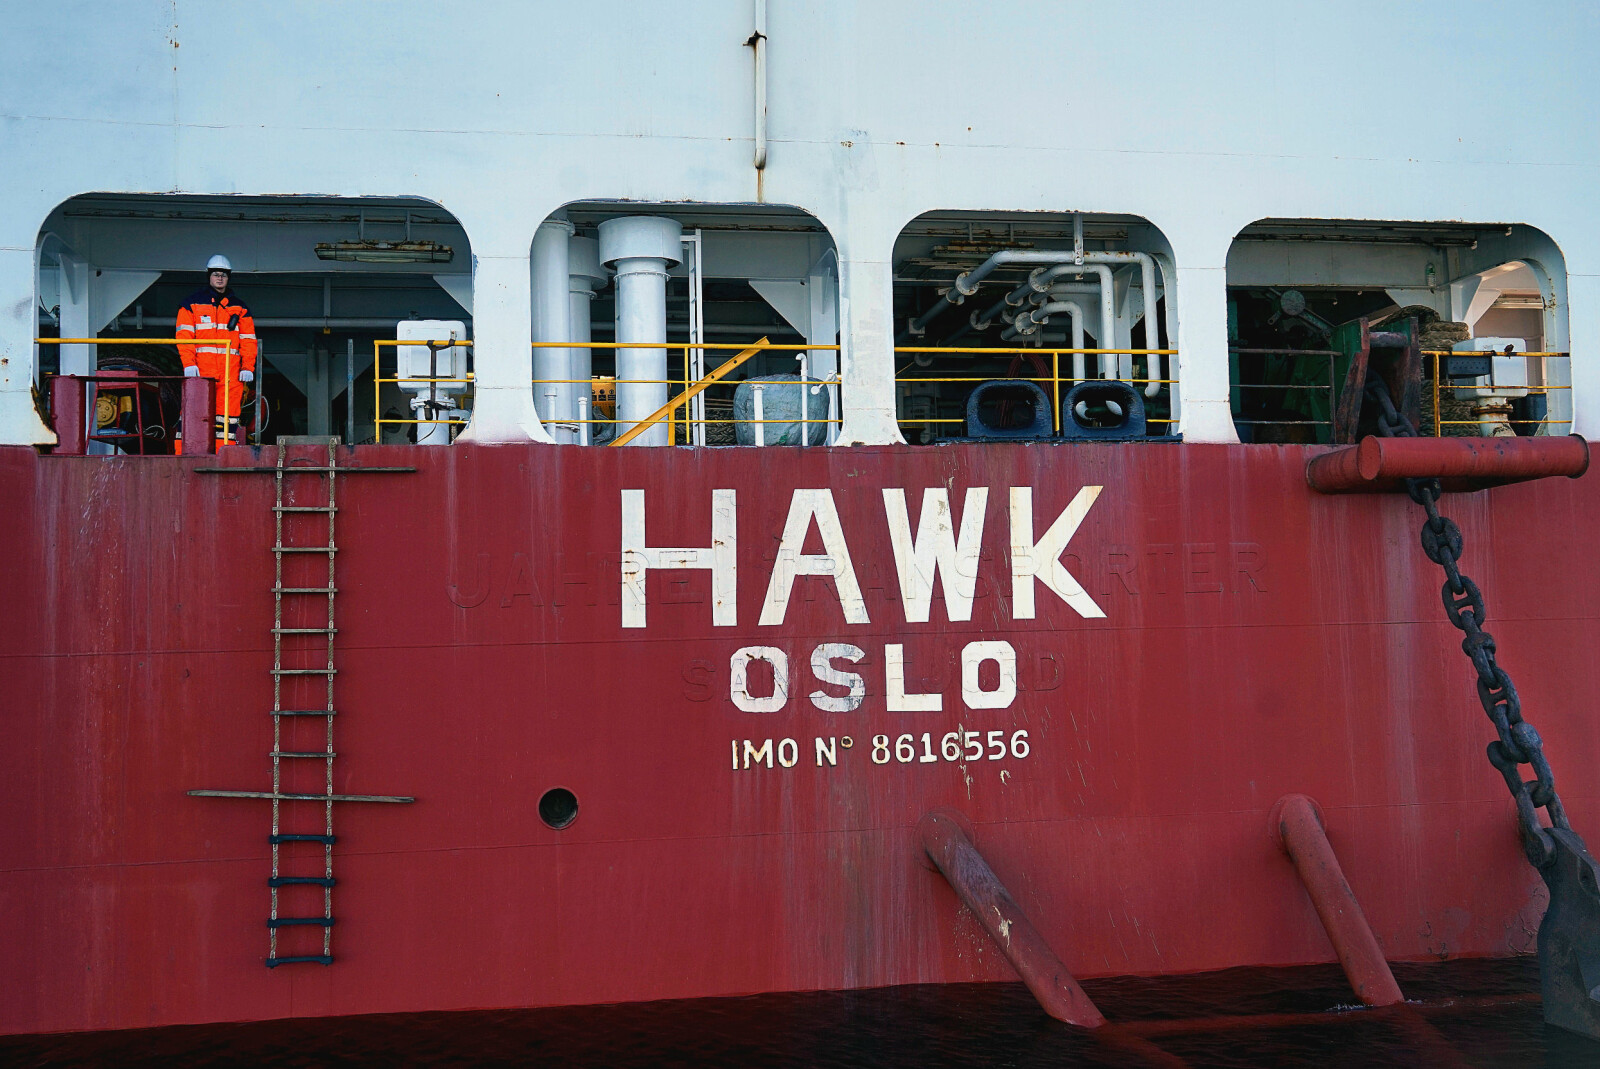 <b>VELKOMMEN:</b> Før avlasting gjennomgår frakteskipet Hawk såkalt balastering, hvor det pumpes inn enorme mengder vann slik at halve skipet senkes under vannoverflaten. 